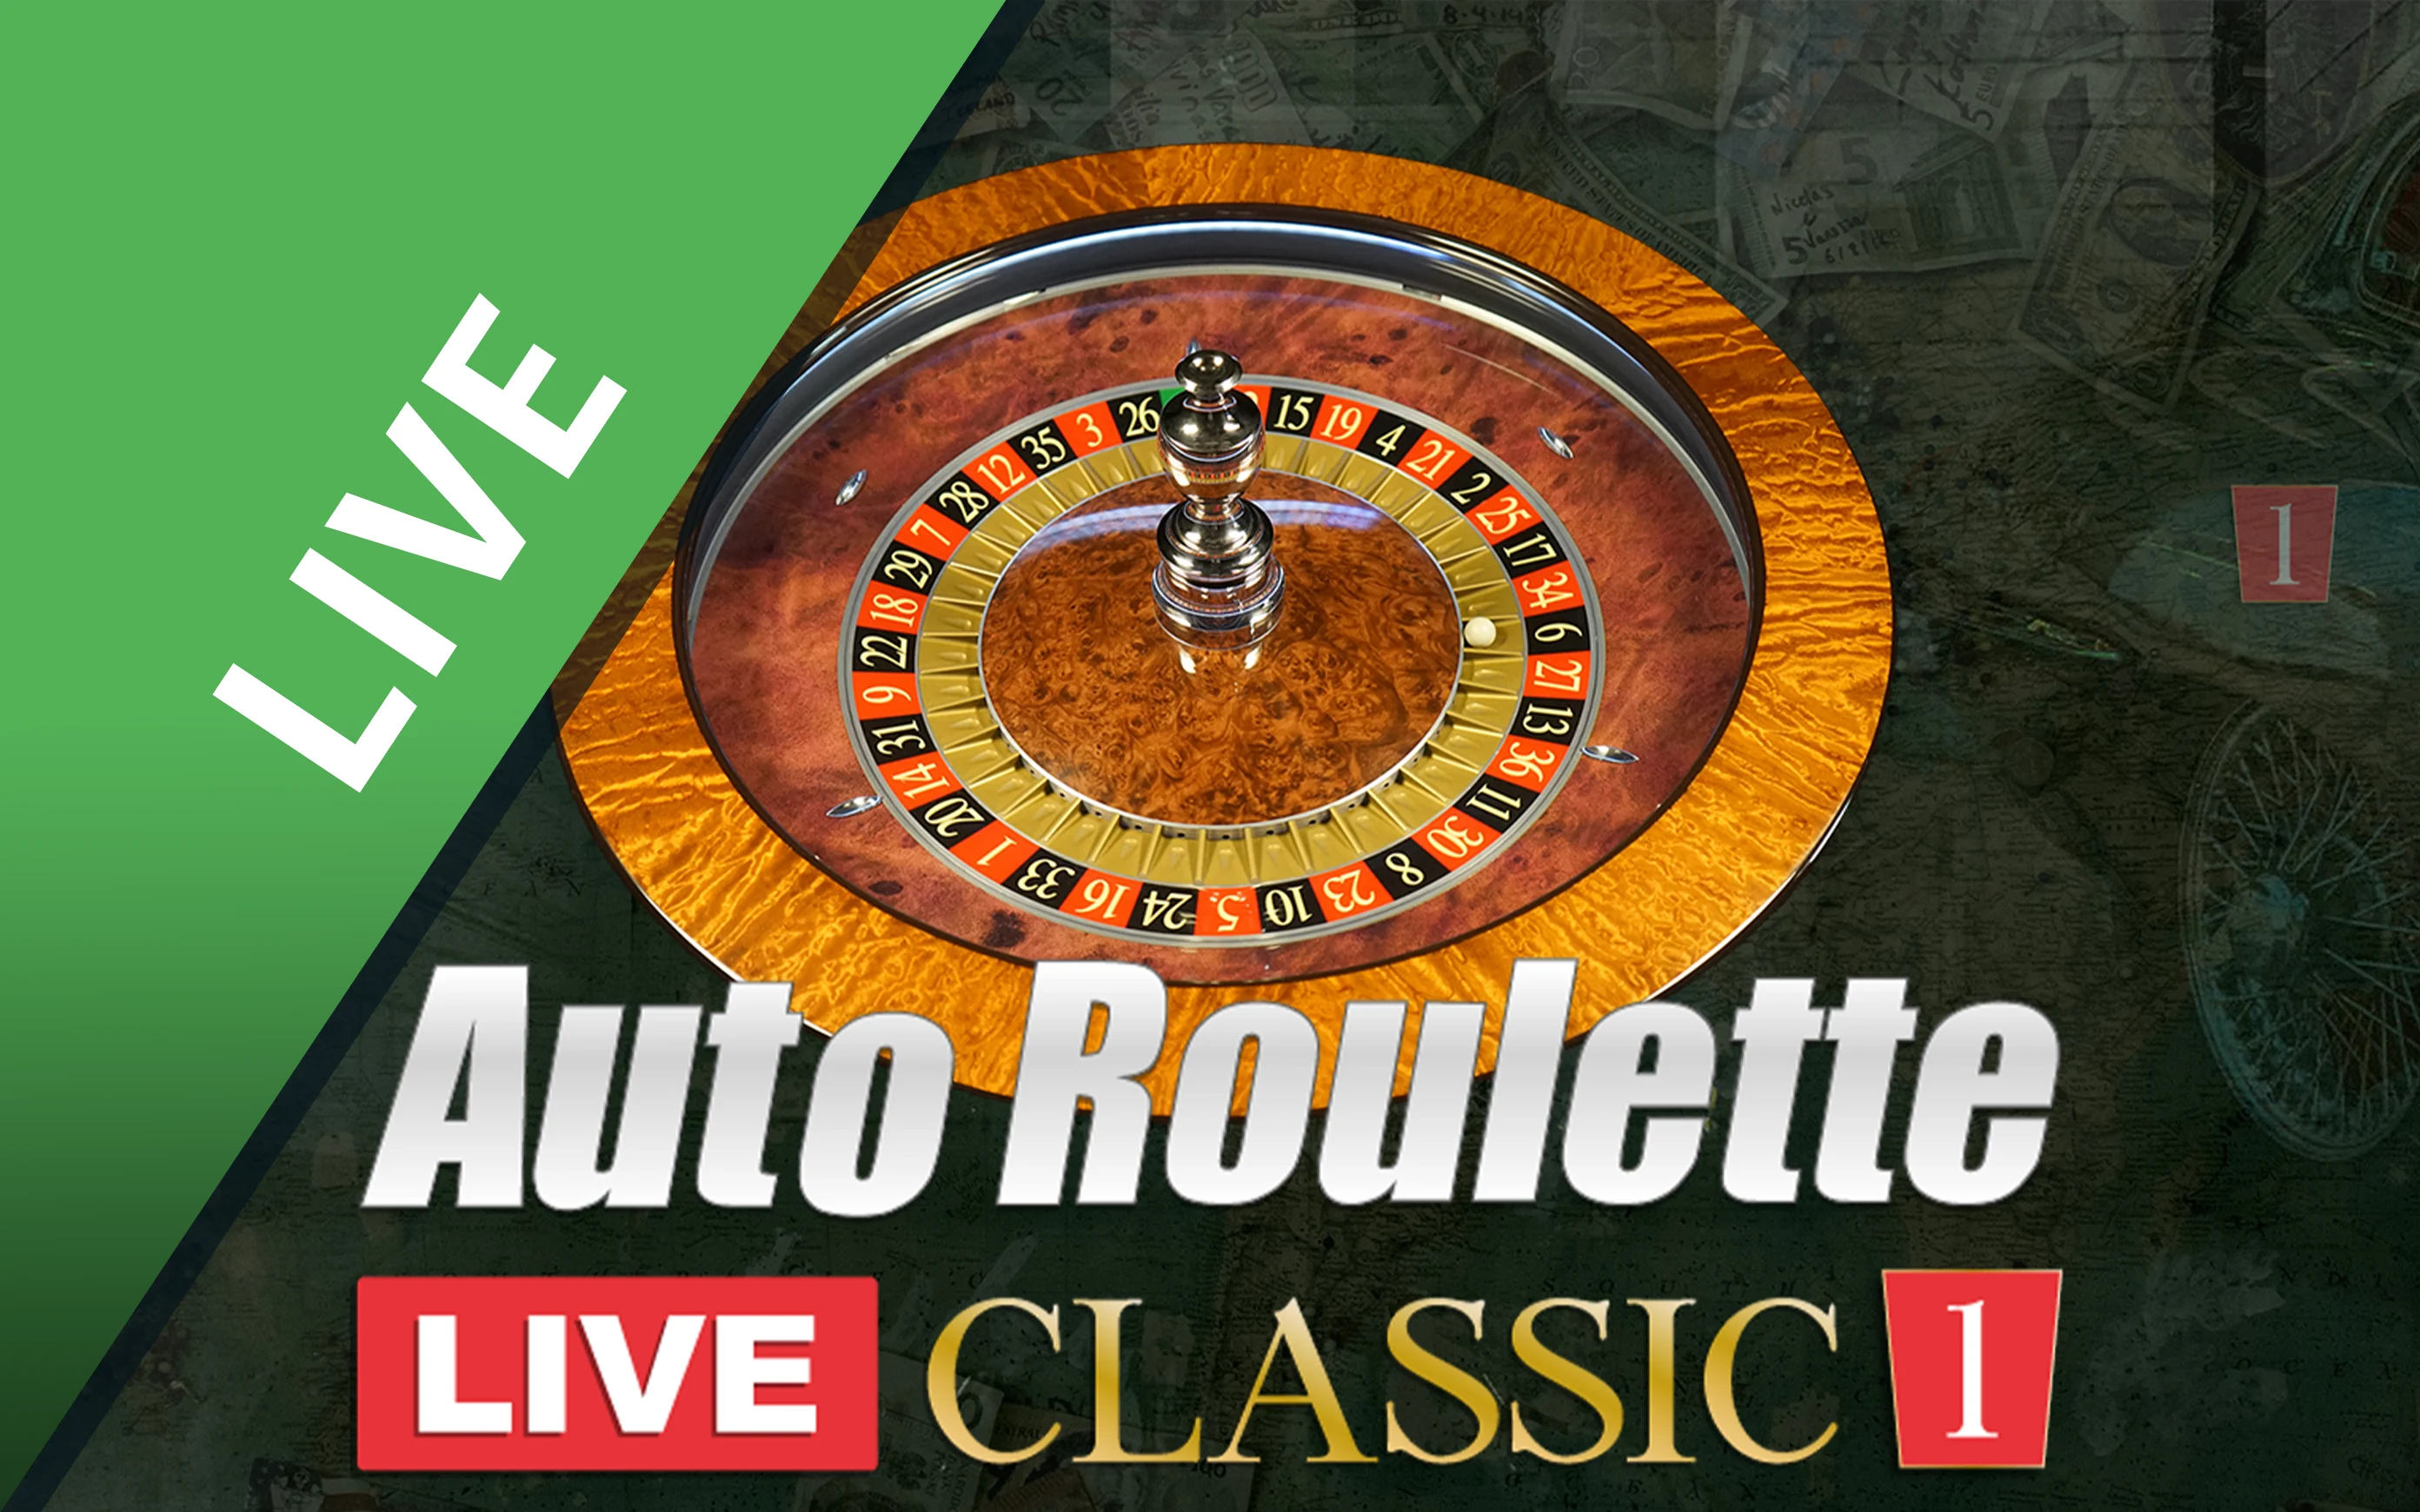 Juega a Classic Roulette 1 en el casino en línea de Starcasino.be